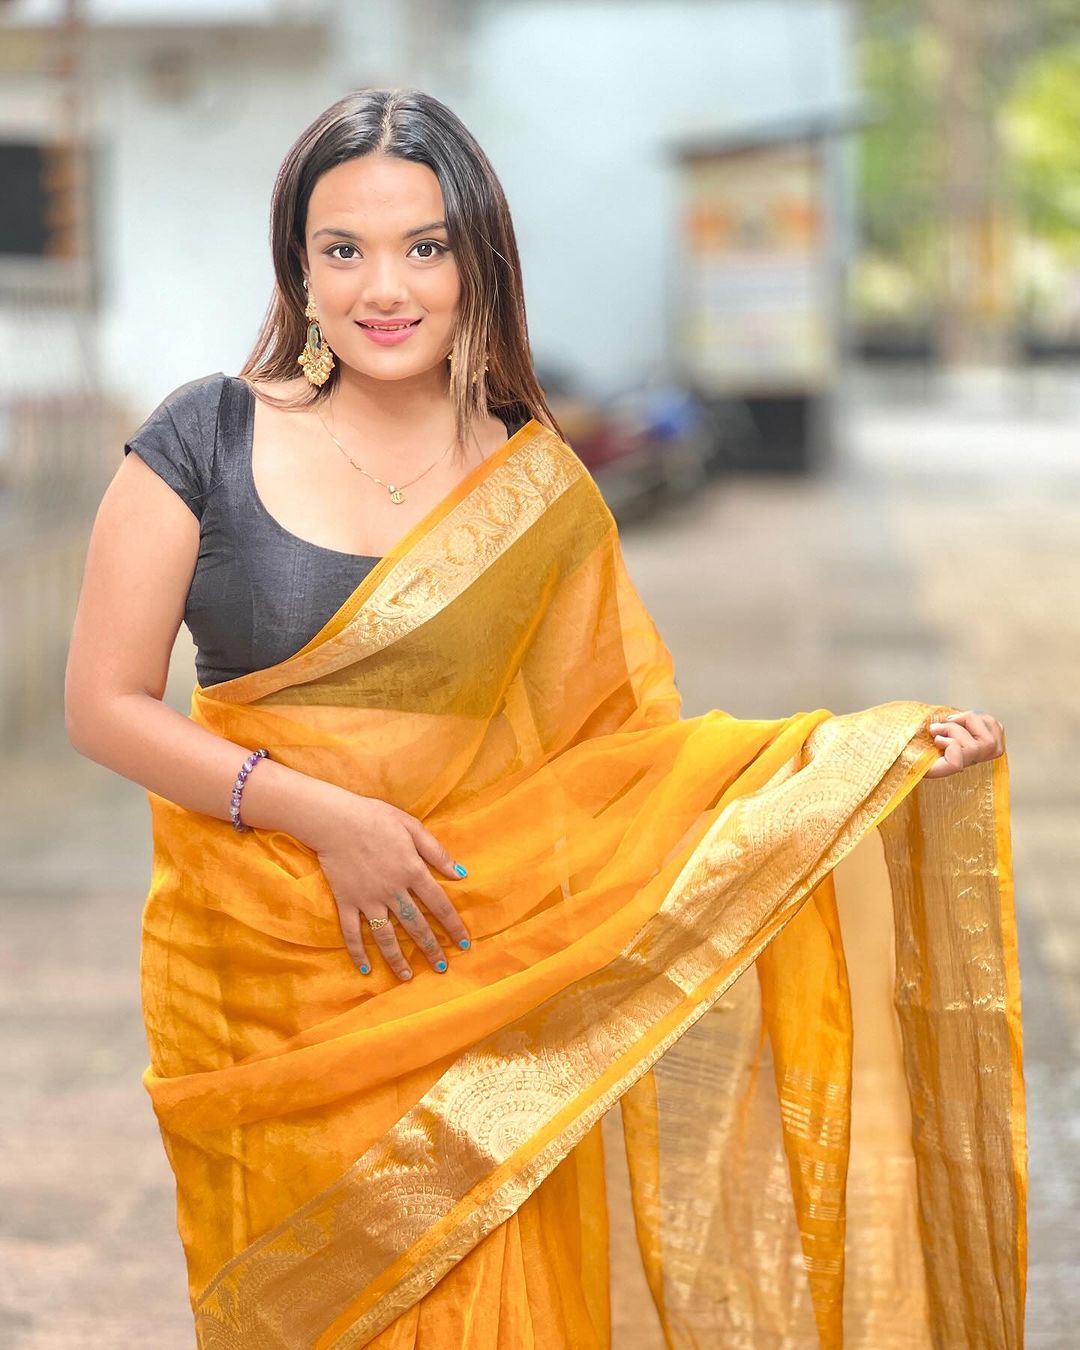 Drisha Kalyani